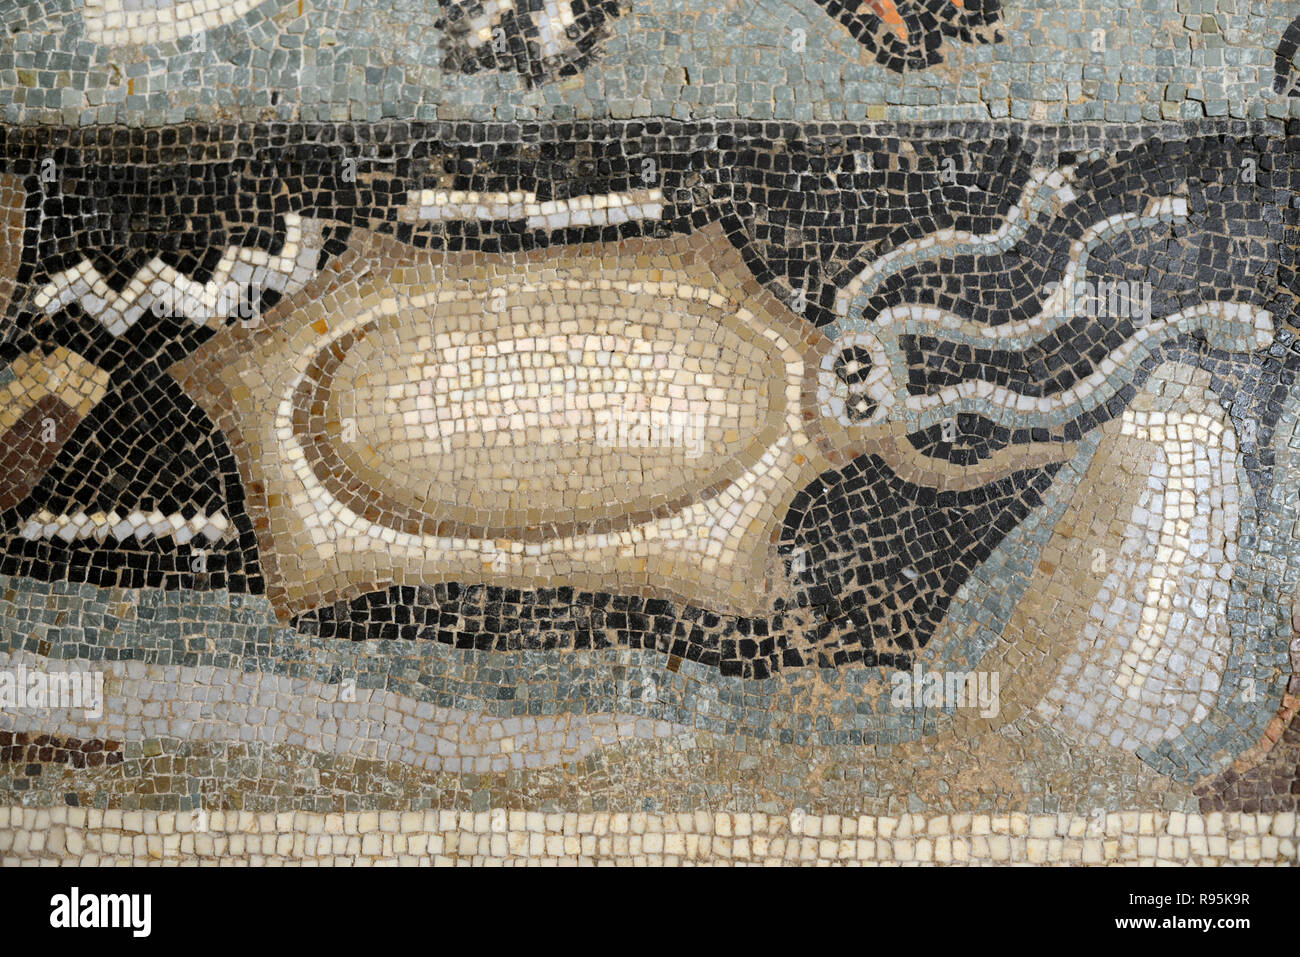 Piso de mosaico romano (c3rd-c4ª) de sepia y fondos marinos del Mediterráneo desde la antigua ciudad romana de Ammaedara Haidra Túnez Foto de stock